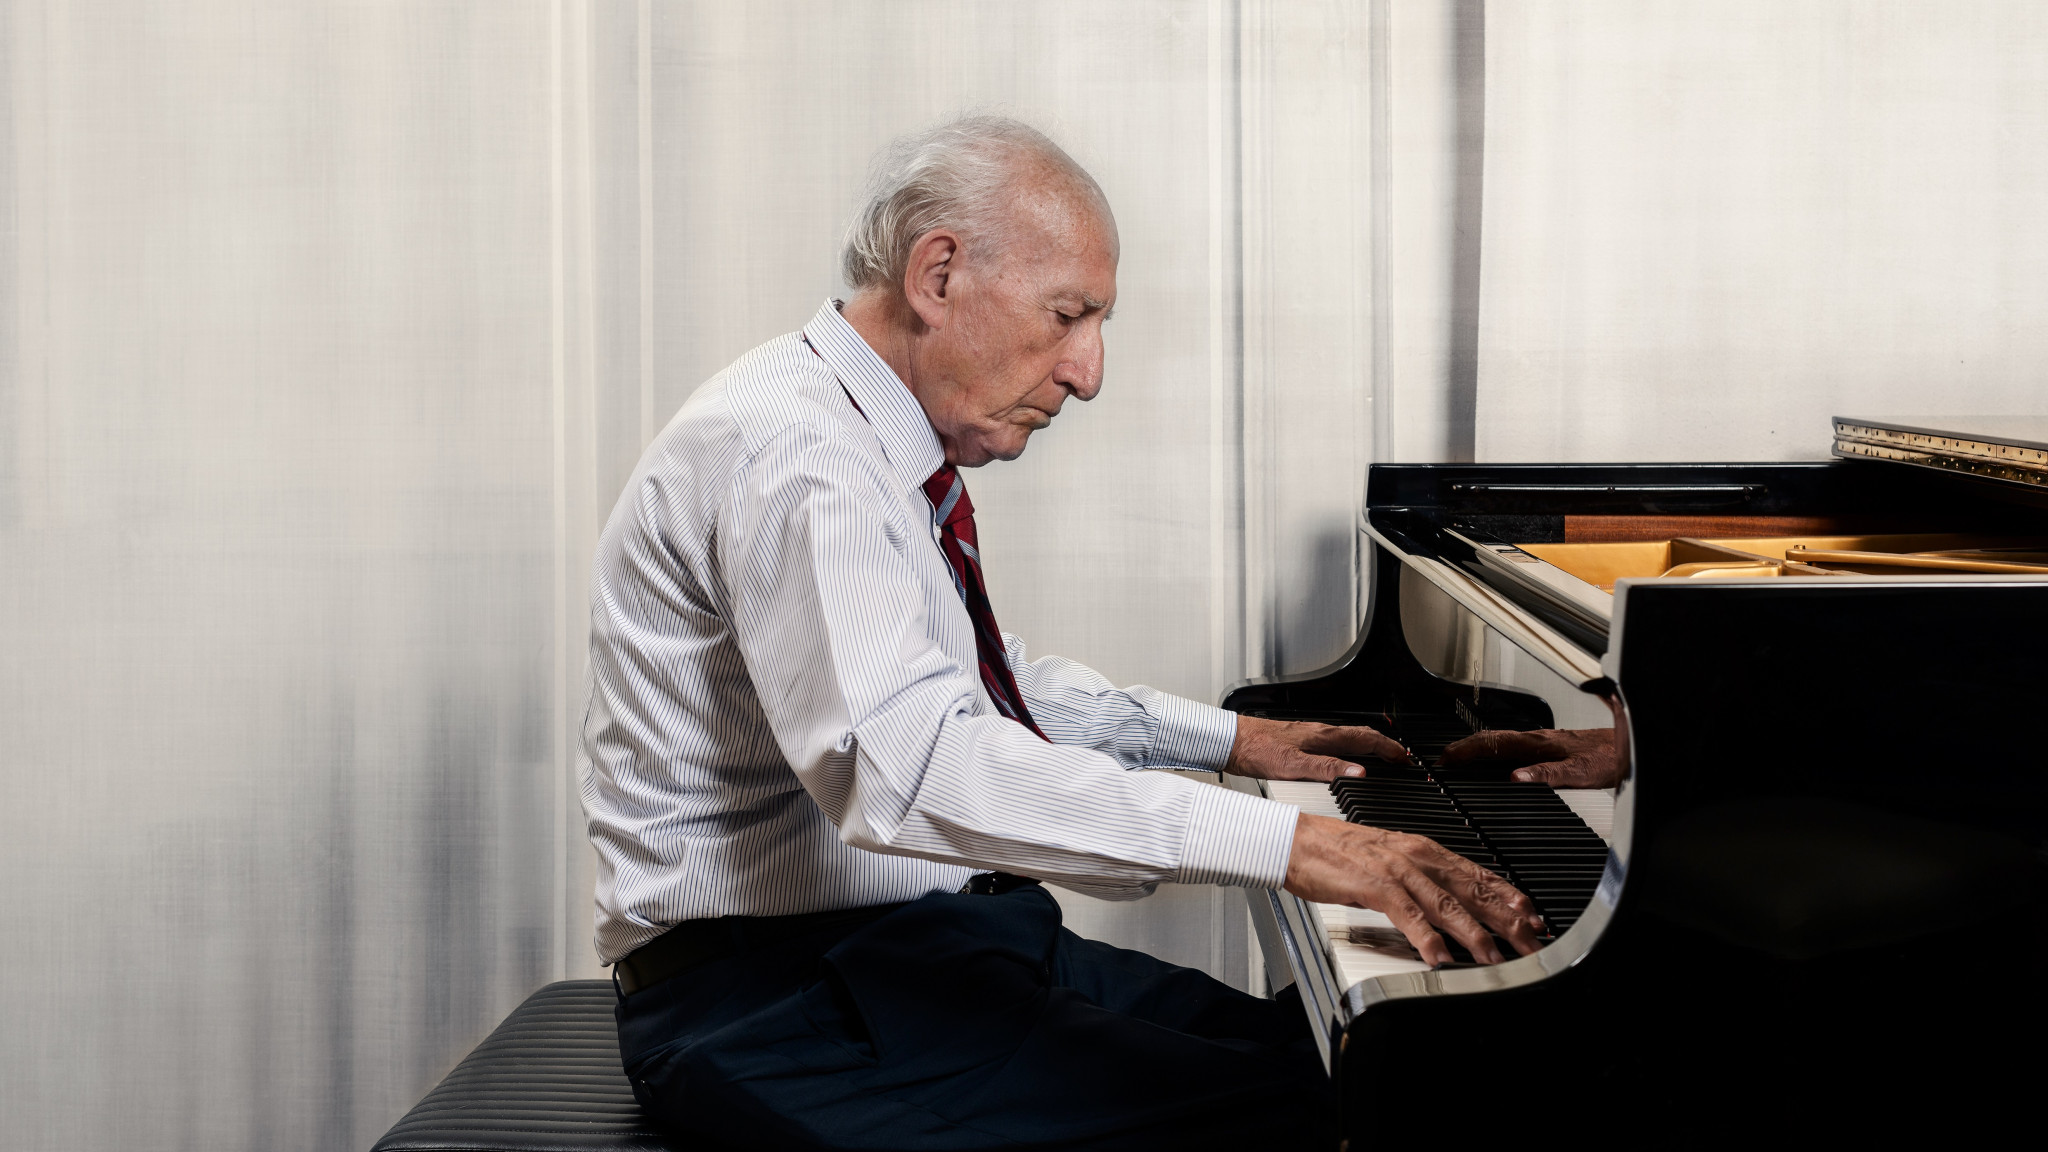 DG releases new Maurizio Pollini's Chopin album